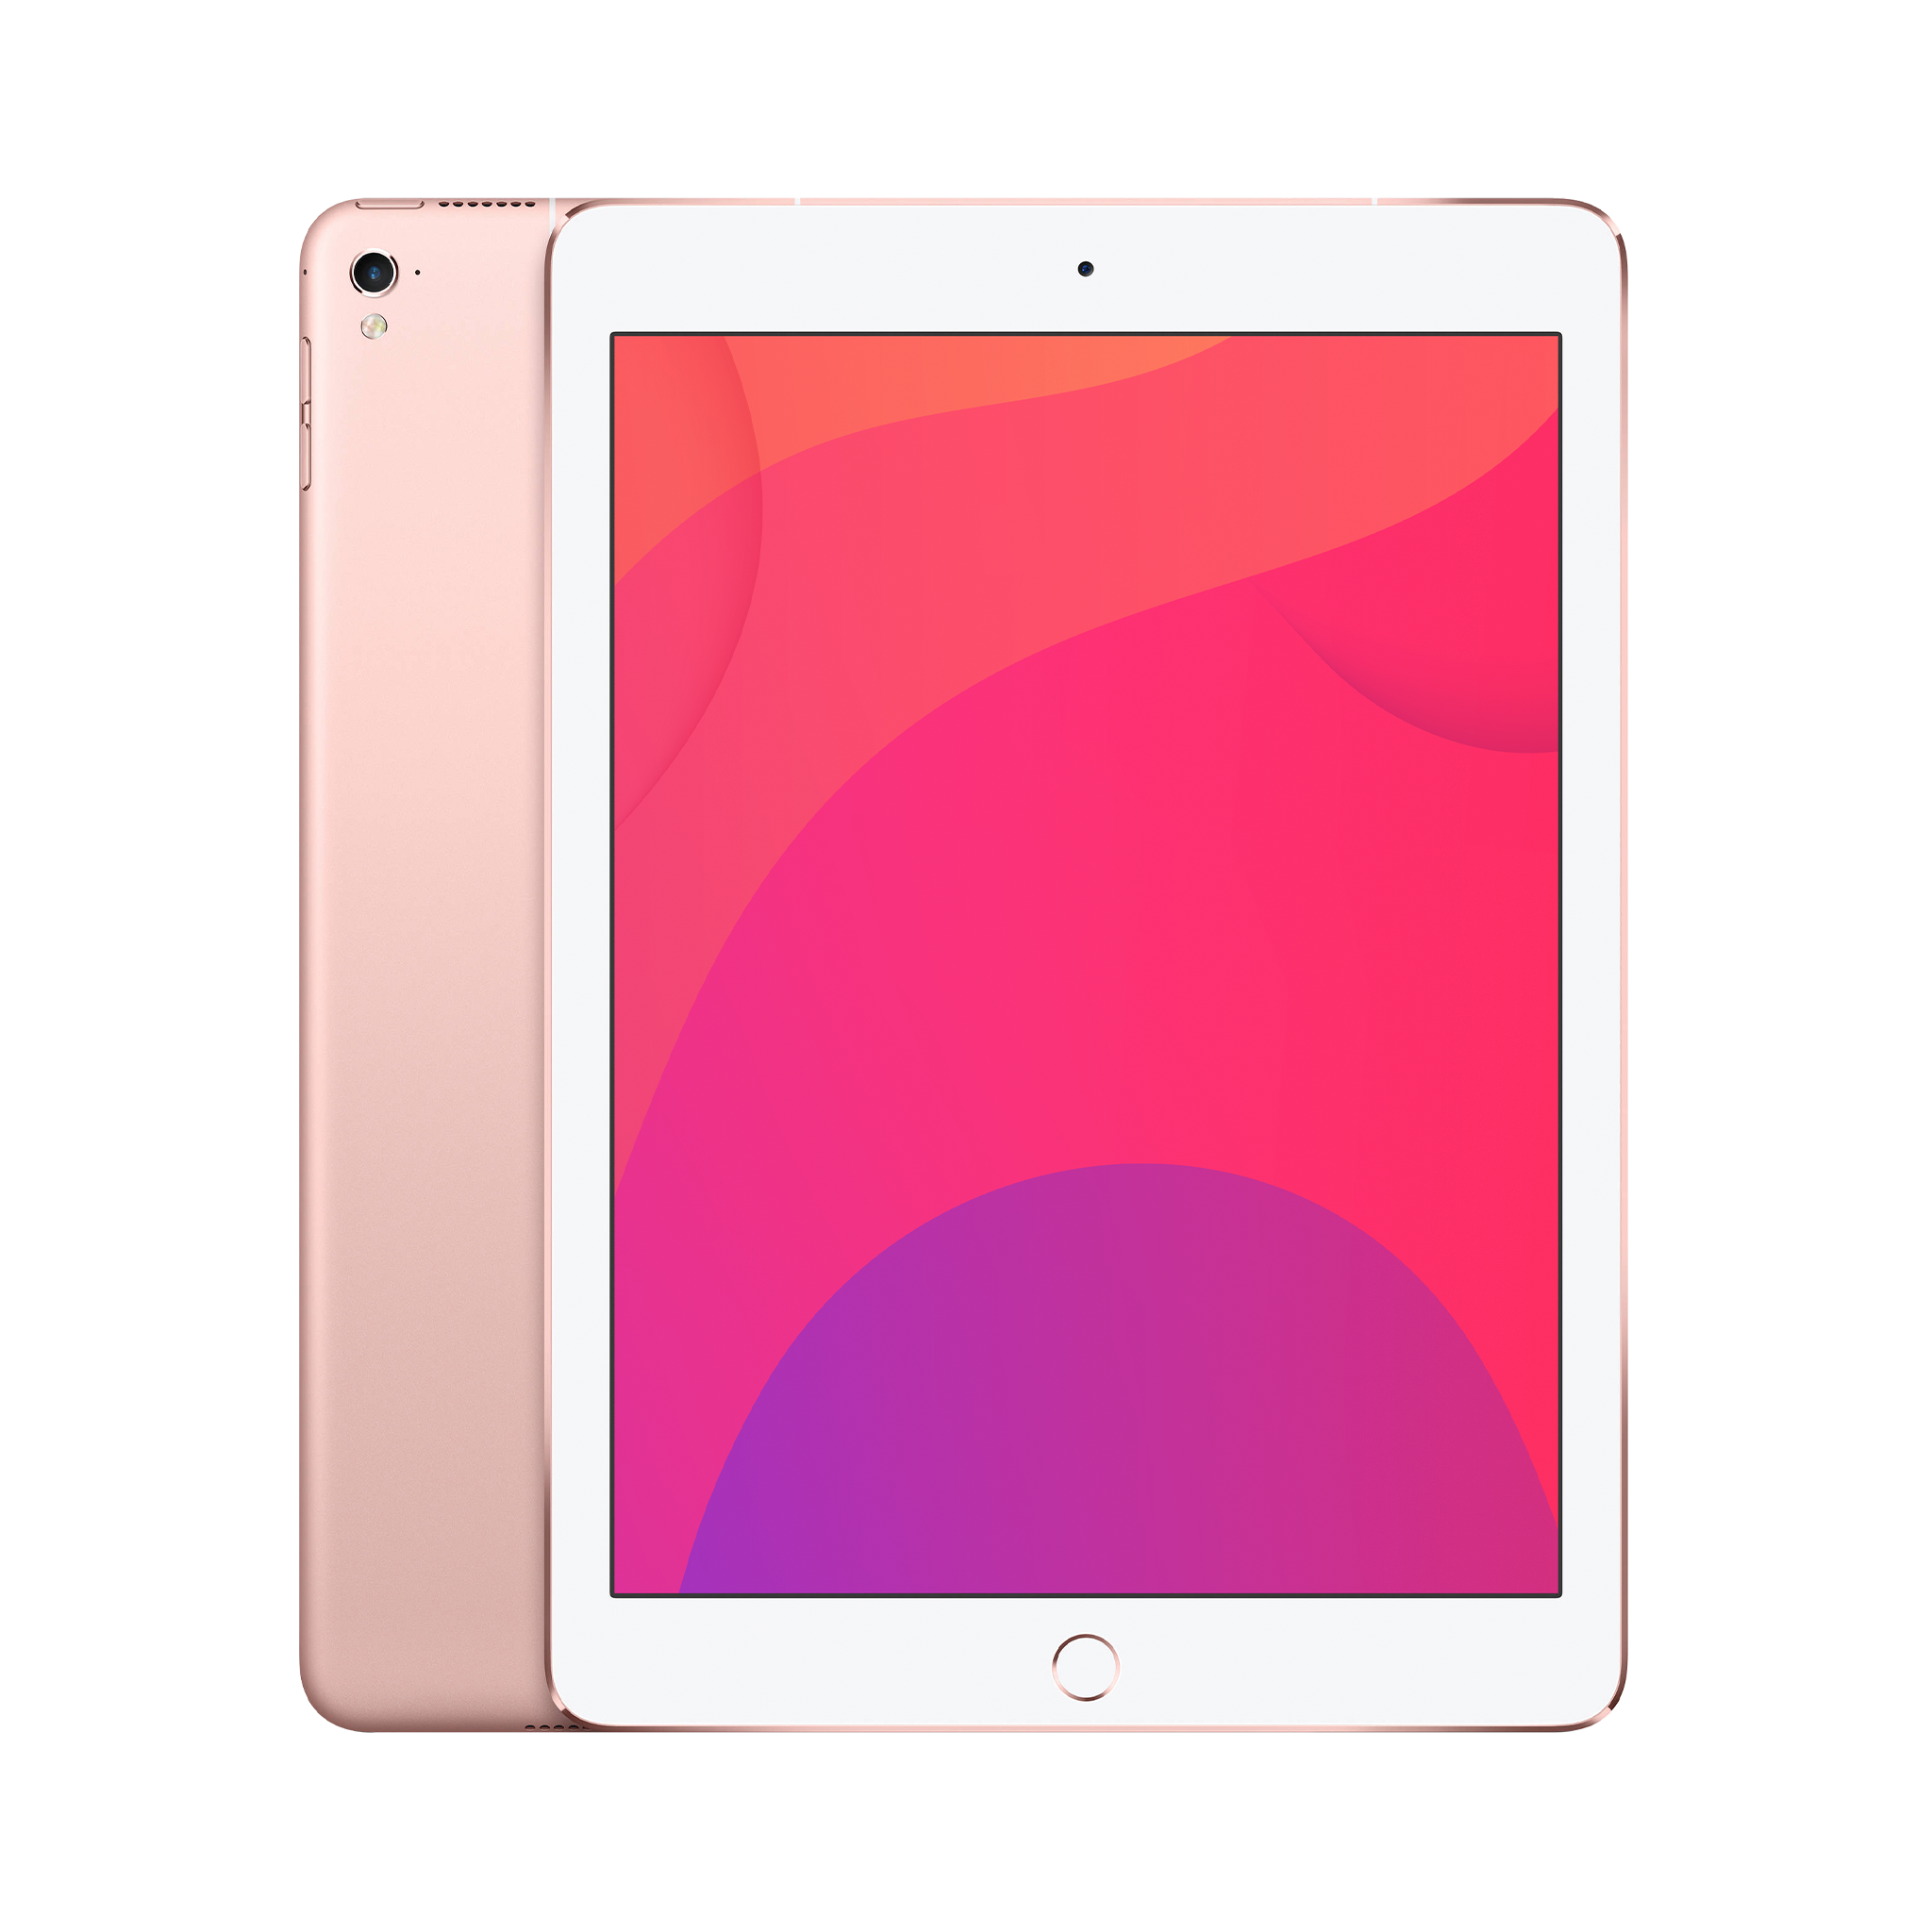 Apple iPad Pro 9.7 (WiFi) 256GB Rose Gold